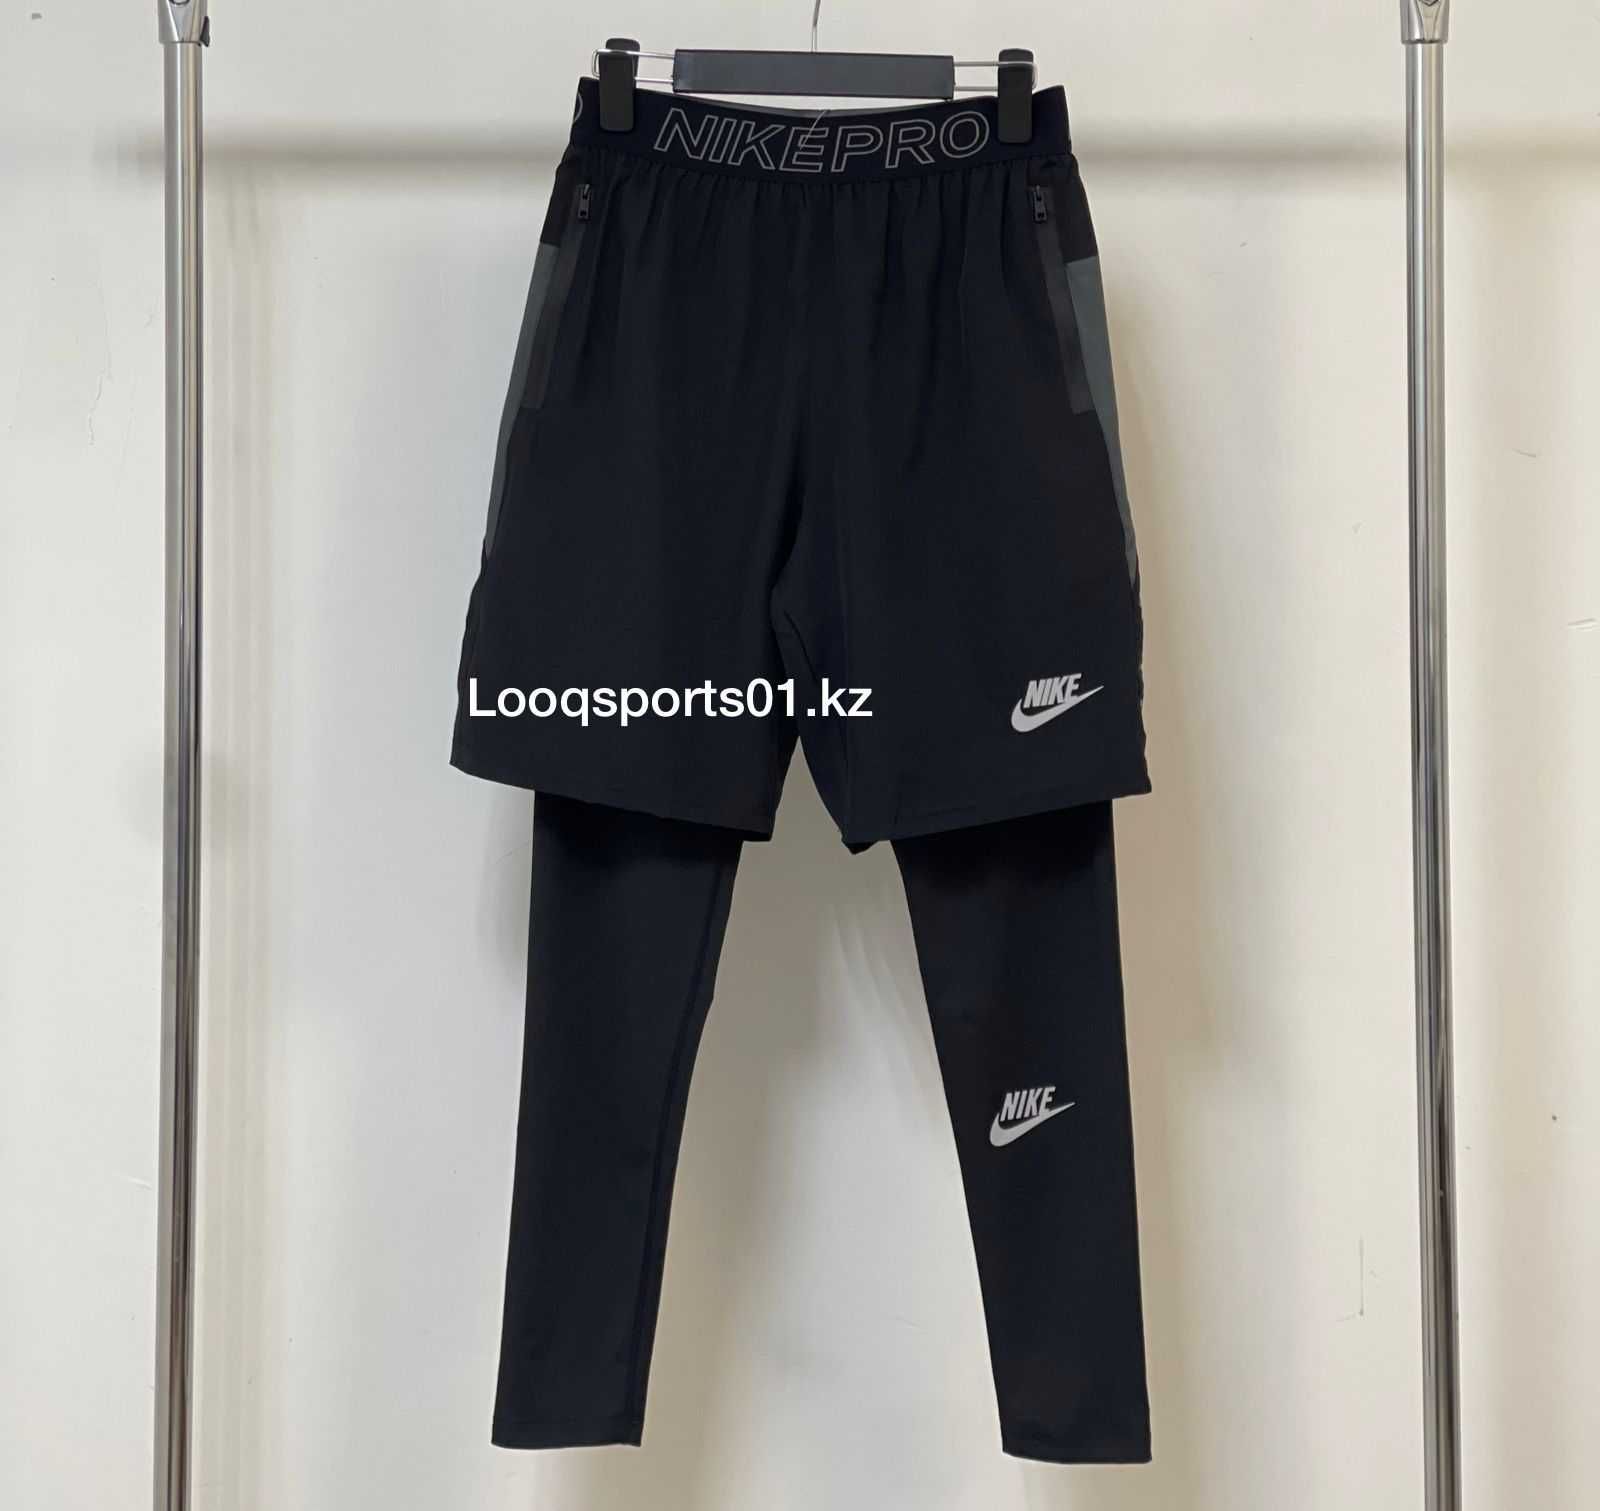 Nike ужские спортивные тайтсы 2в1, шорты штаны + лосины (1233)